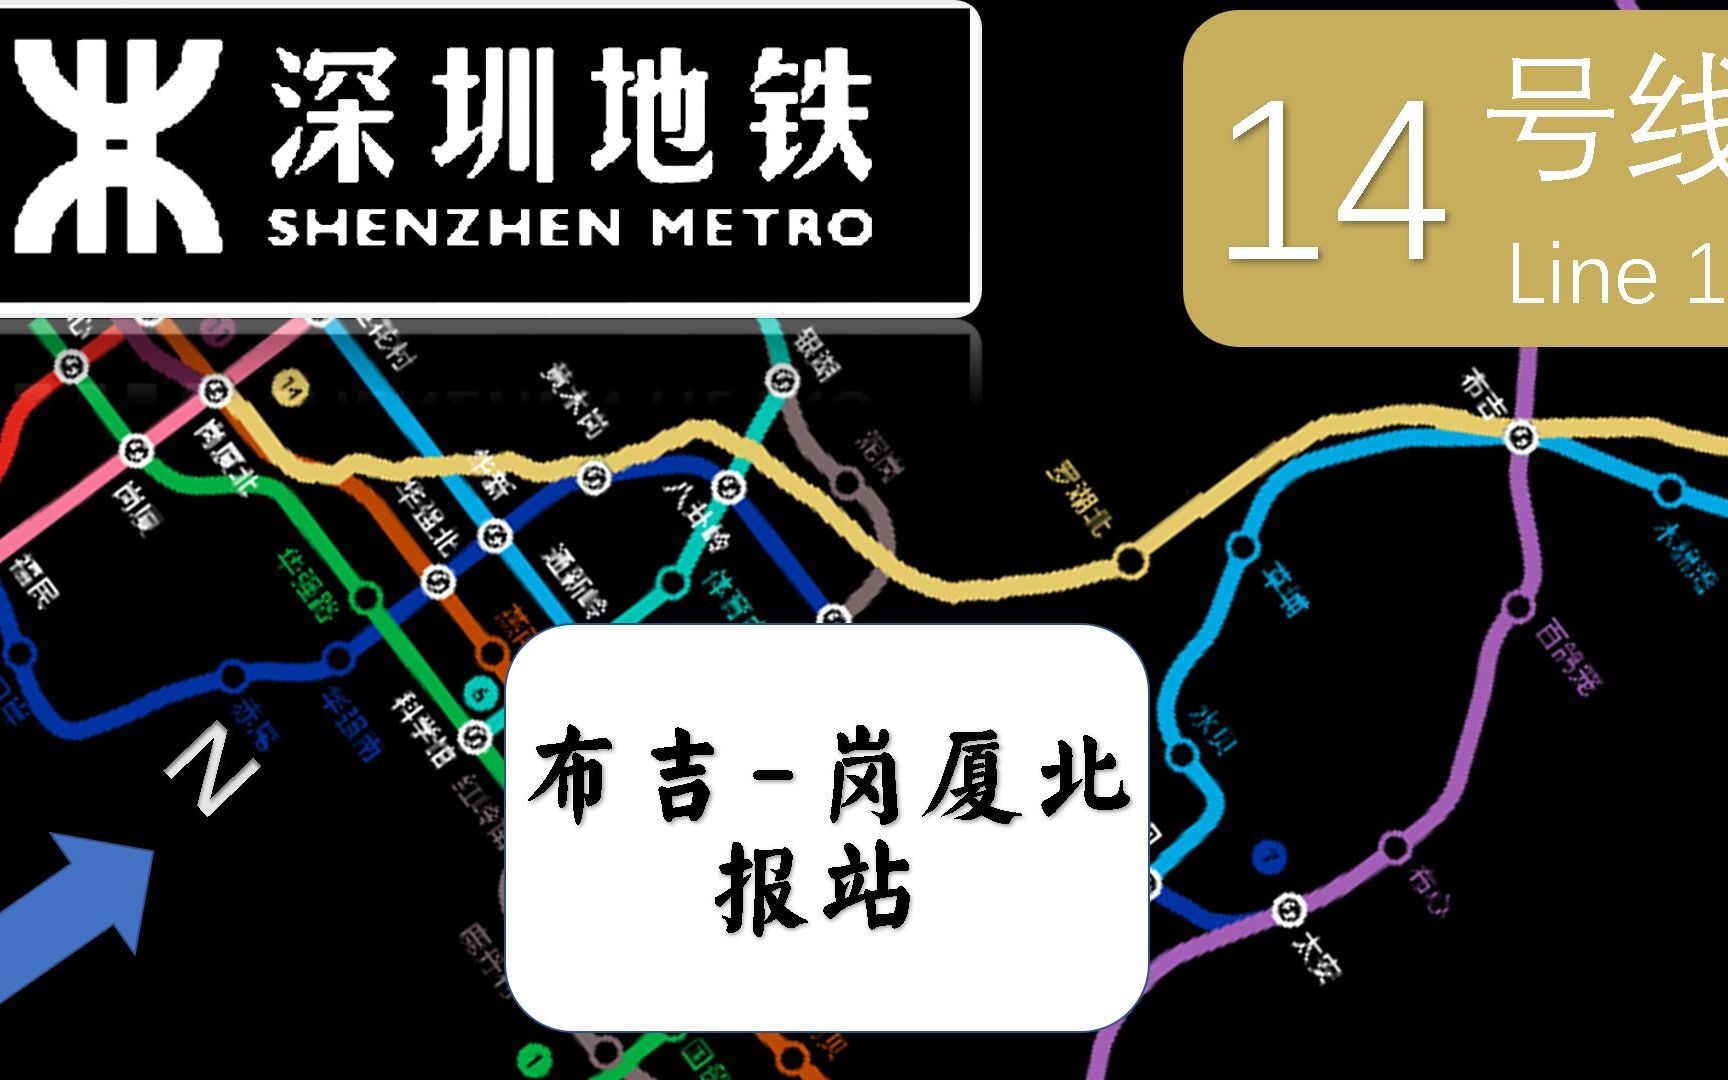 深圳14号地铁线路明细图片